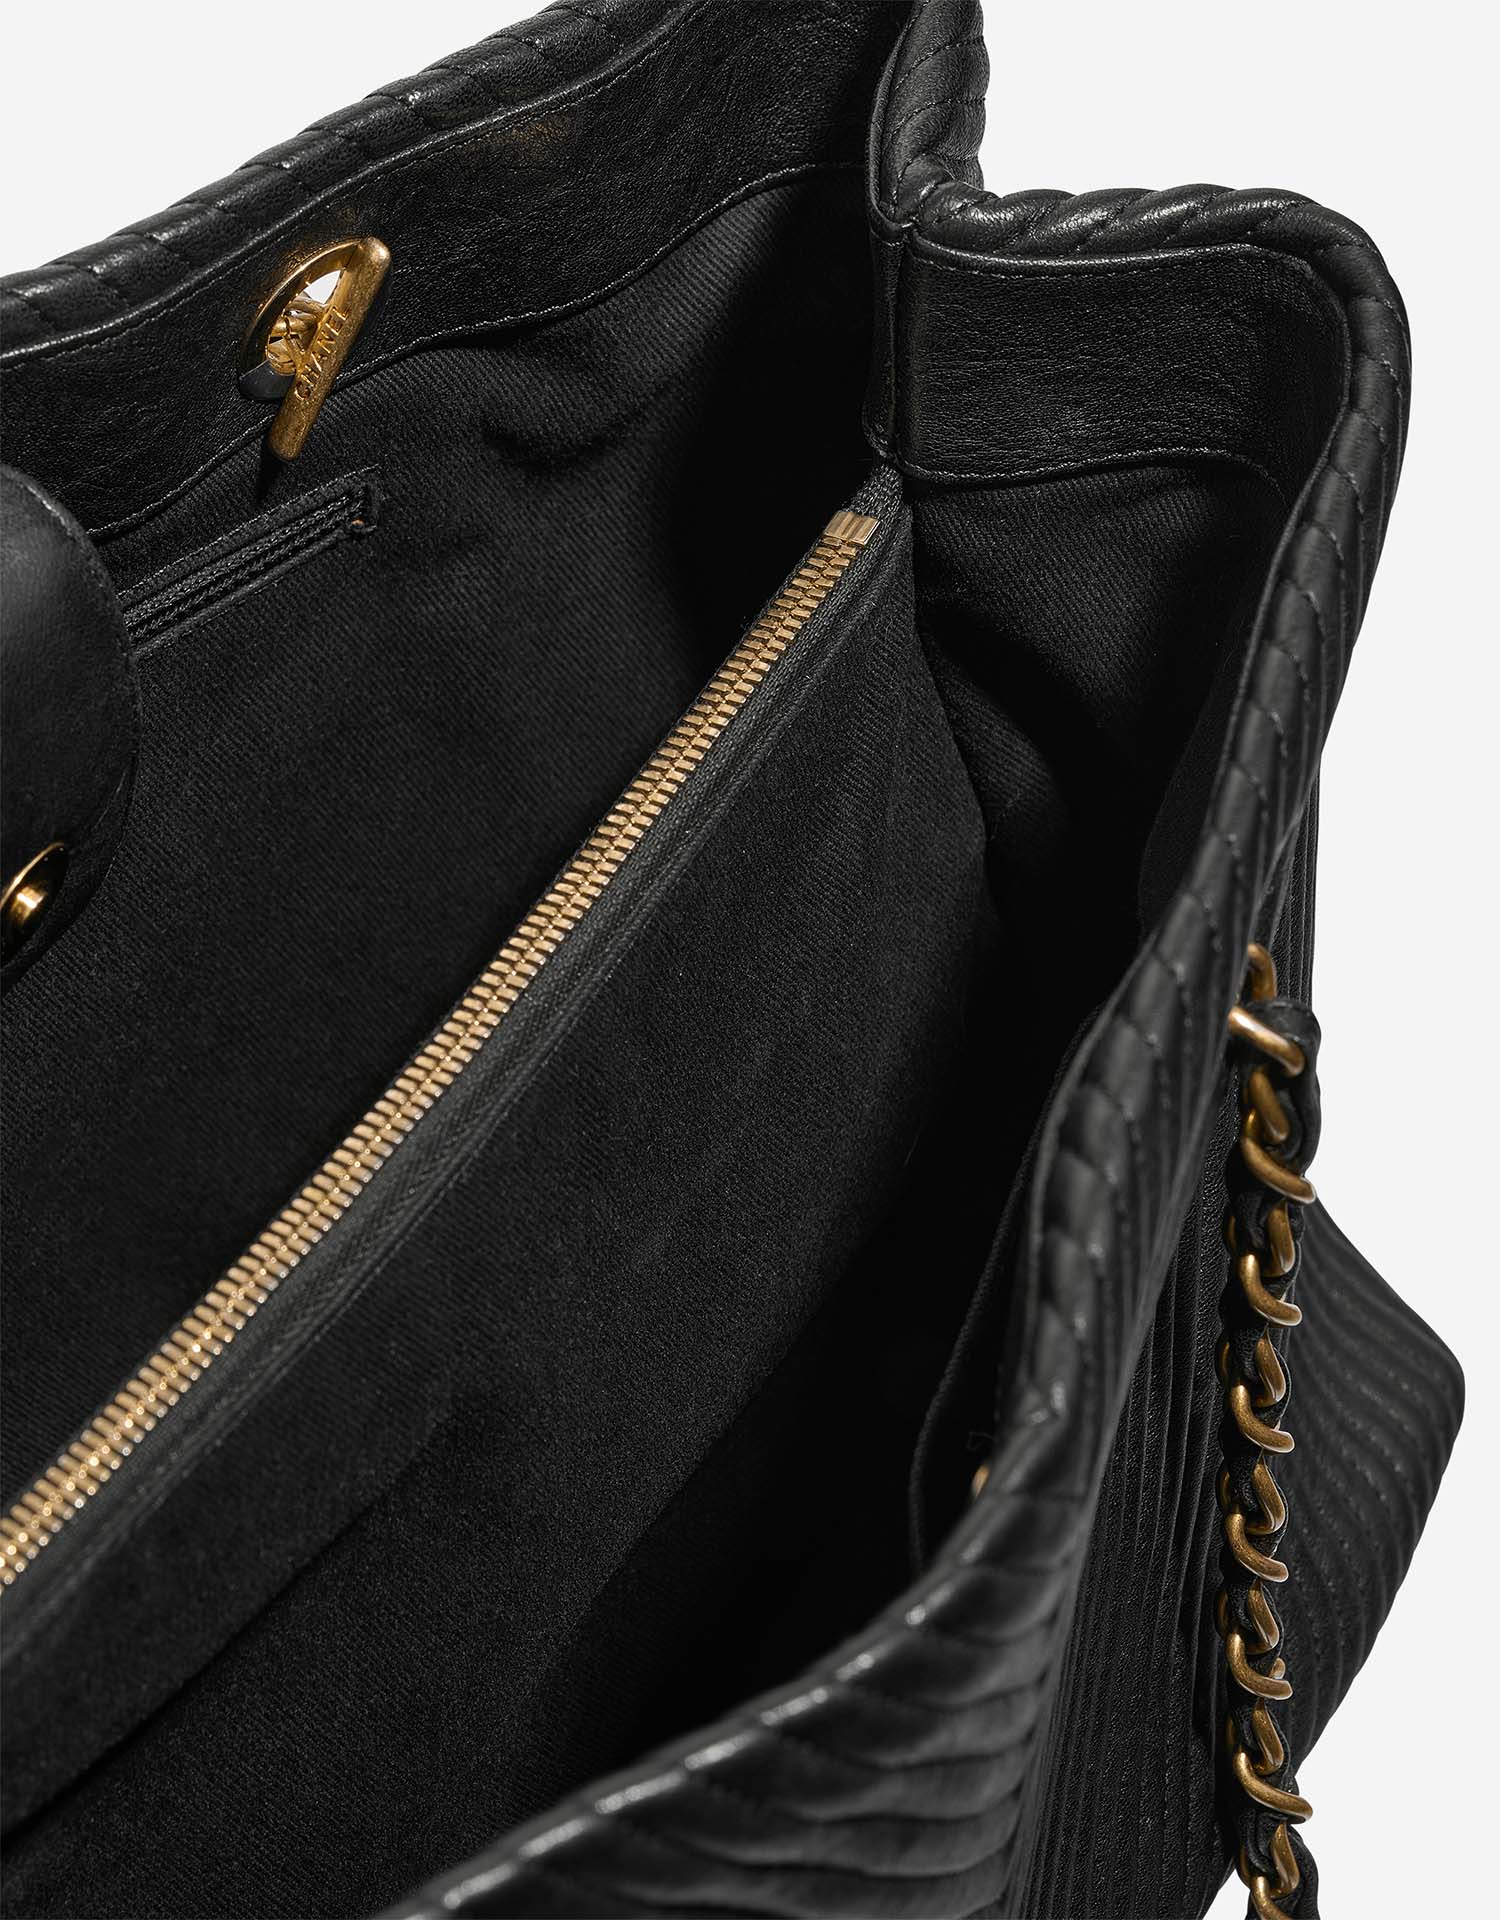 Chanel GST Large Black Inside | Verkaufen Sie Ihre Designer-Tasche auf Saclab.com